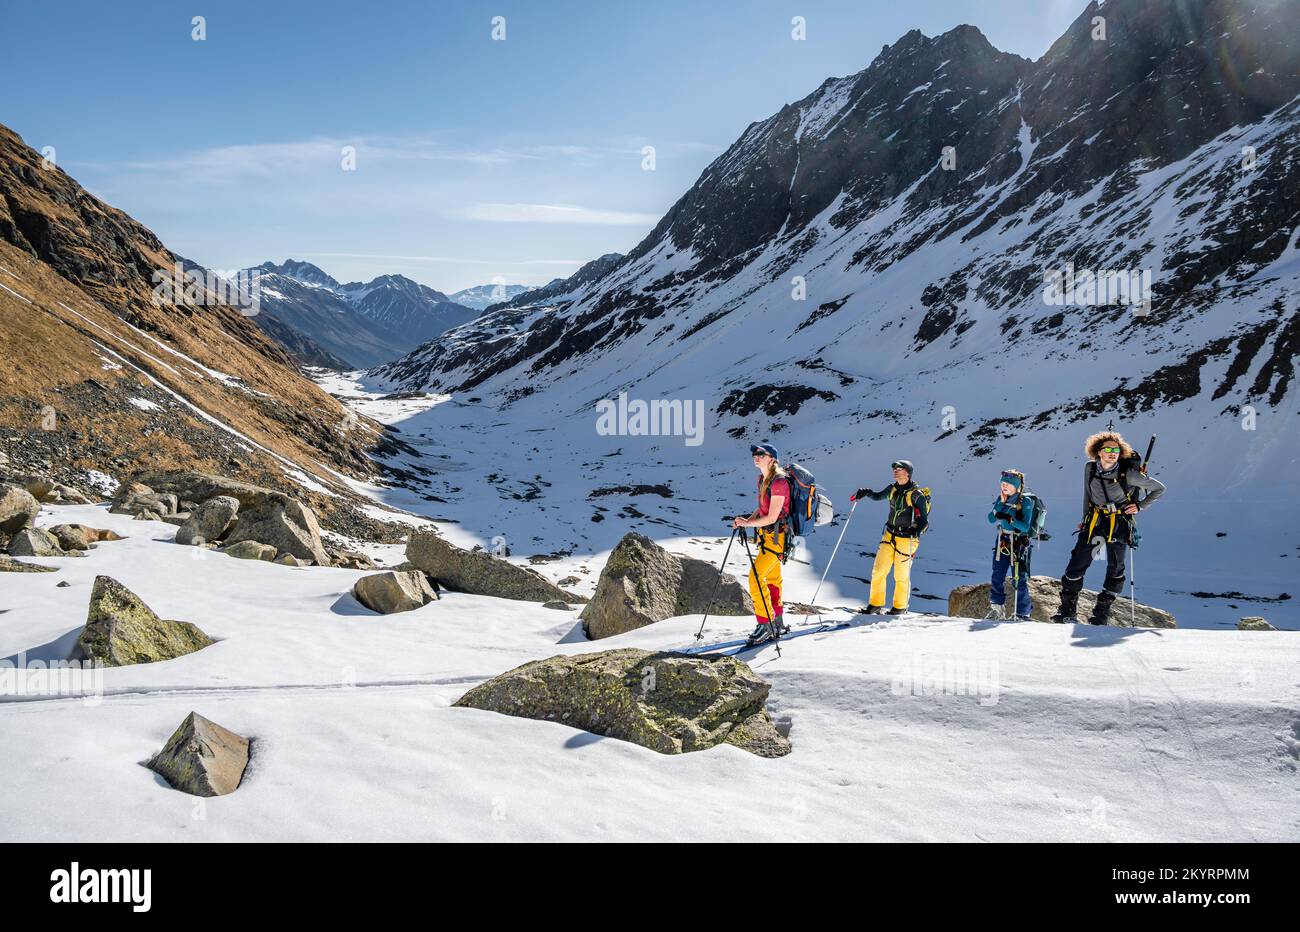 Skitouristen auf dem Aufstieg, Berge im Winter mit Schnee, Stubai-Alpen, Tirol, Österreich, Europa Stockfoto